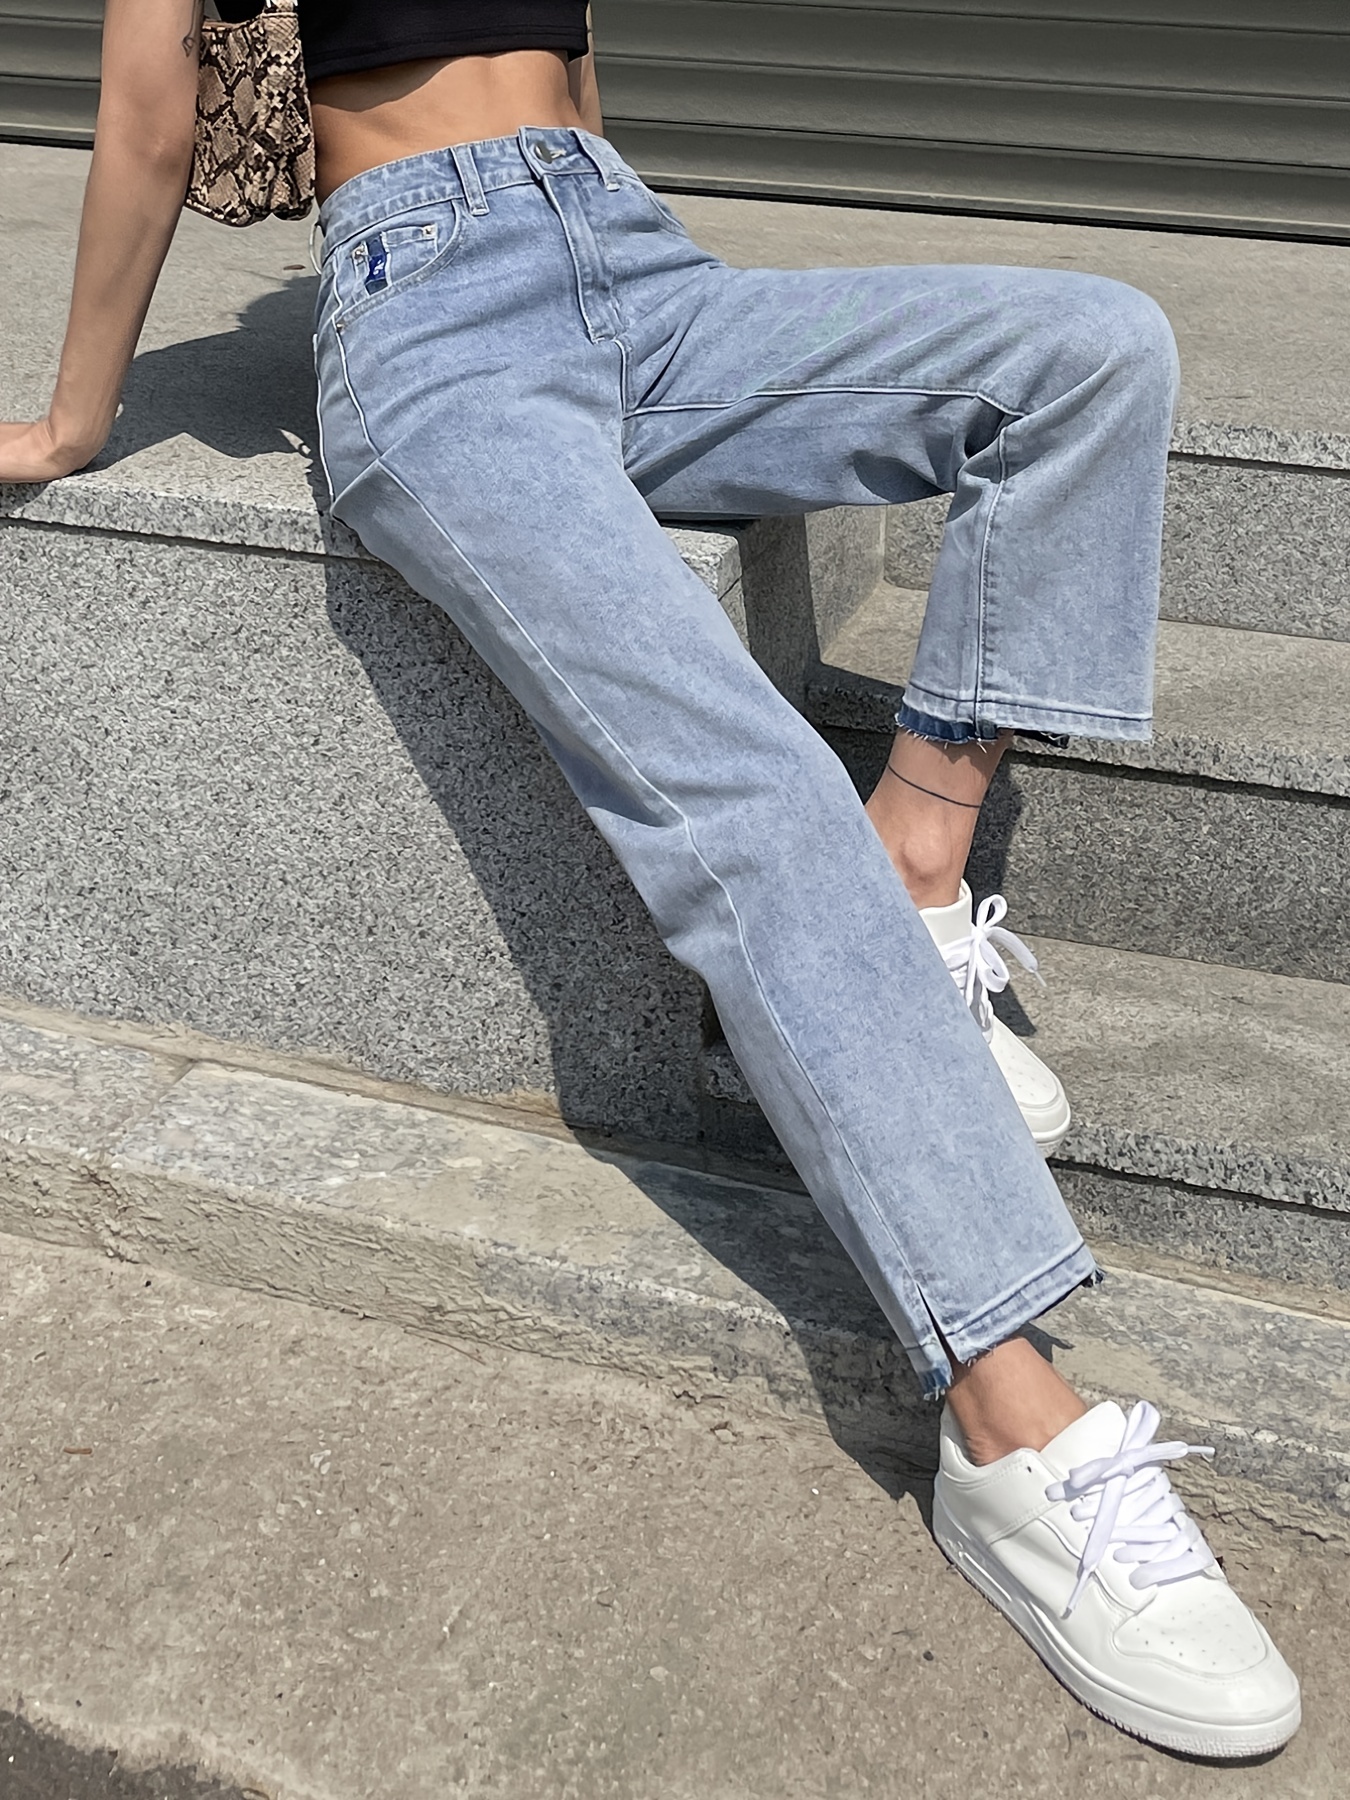 2020 Pantalones De Cintura Alta Moda Vaquera Para Mujer Señoras Ocasionales  Pockets Jeans Primavera Largo Azul Denim Pantalón Mujer Plus De 29,86 €